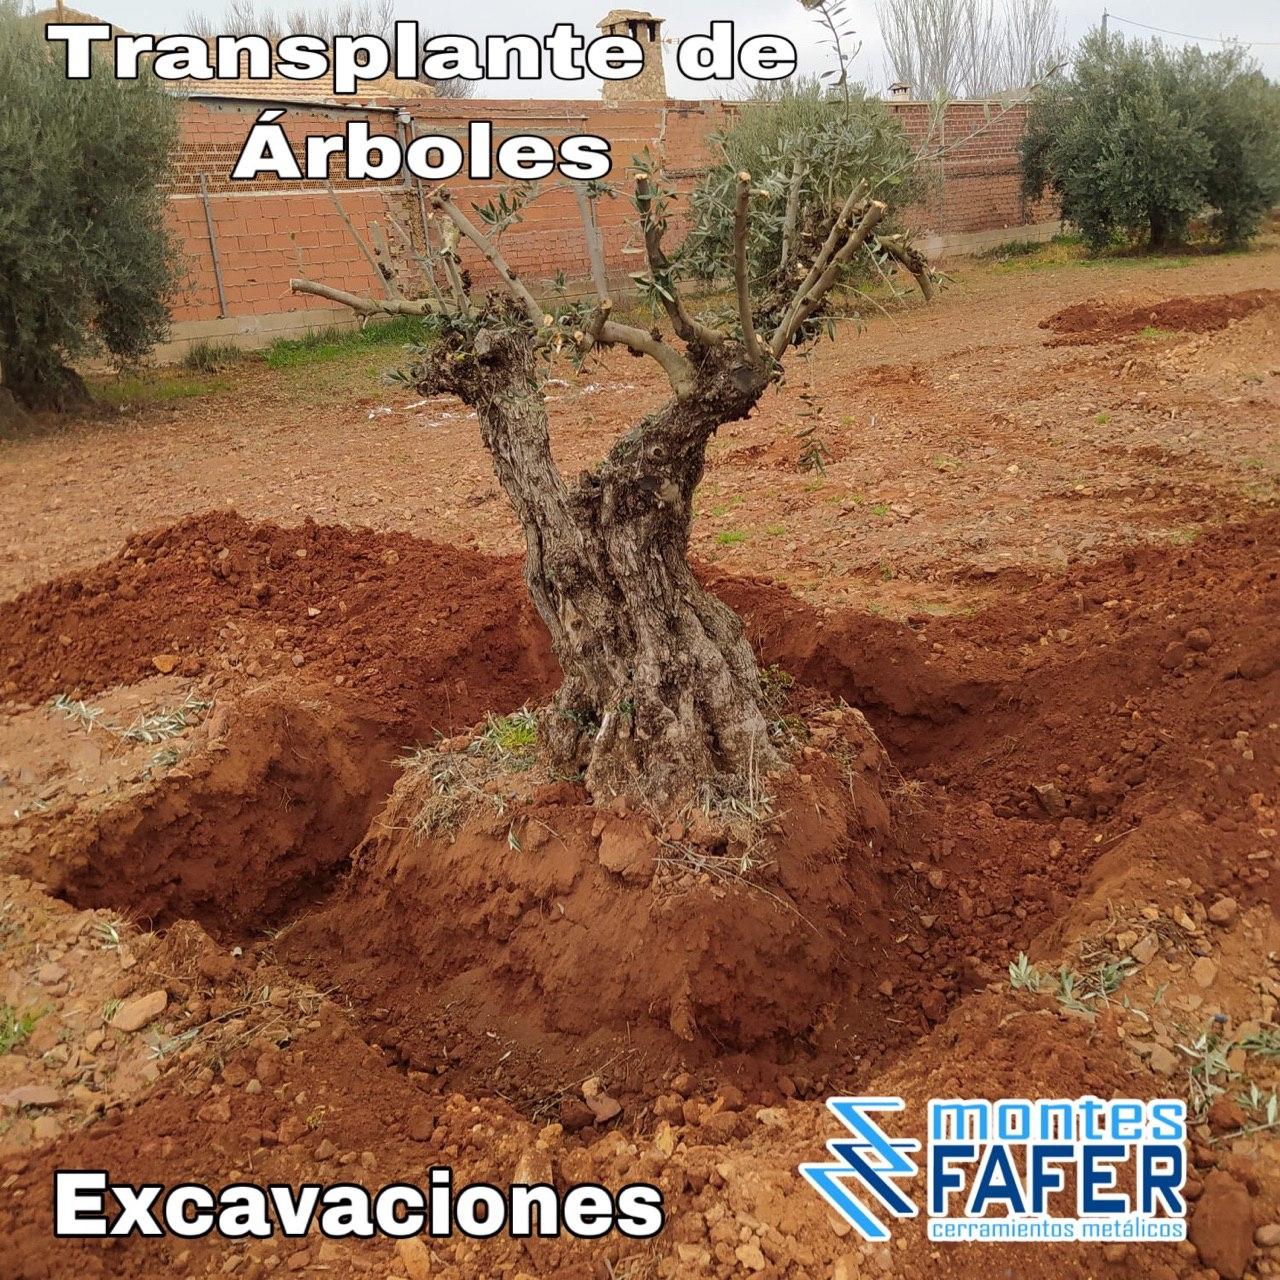 Transplante de arboles excavaciones MontesFafer